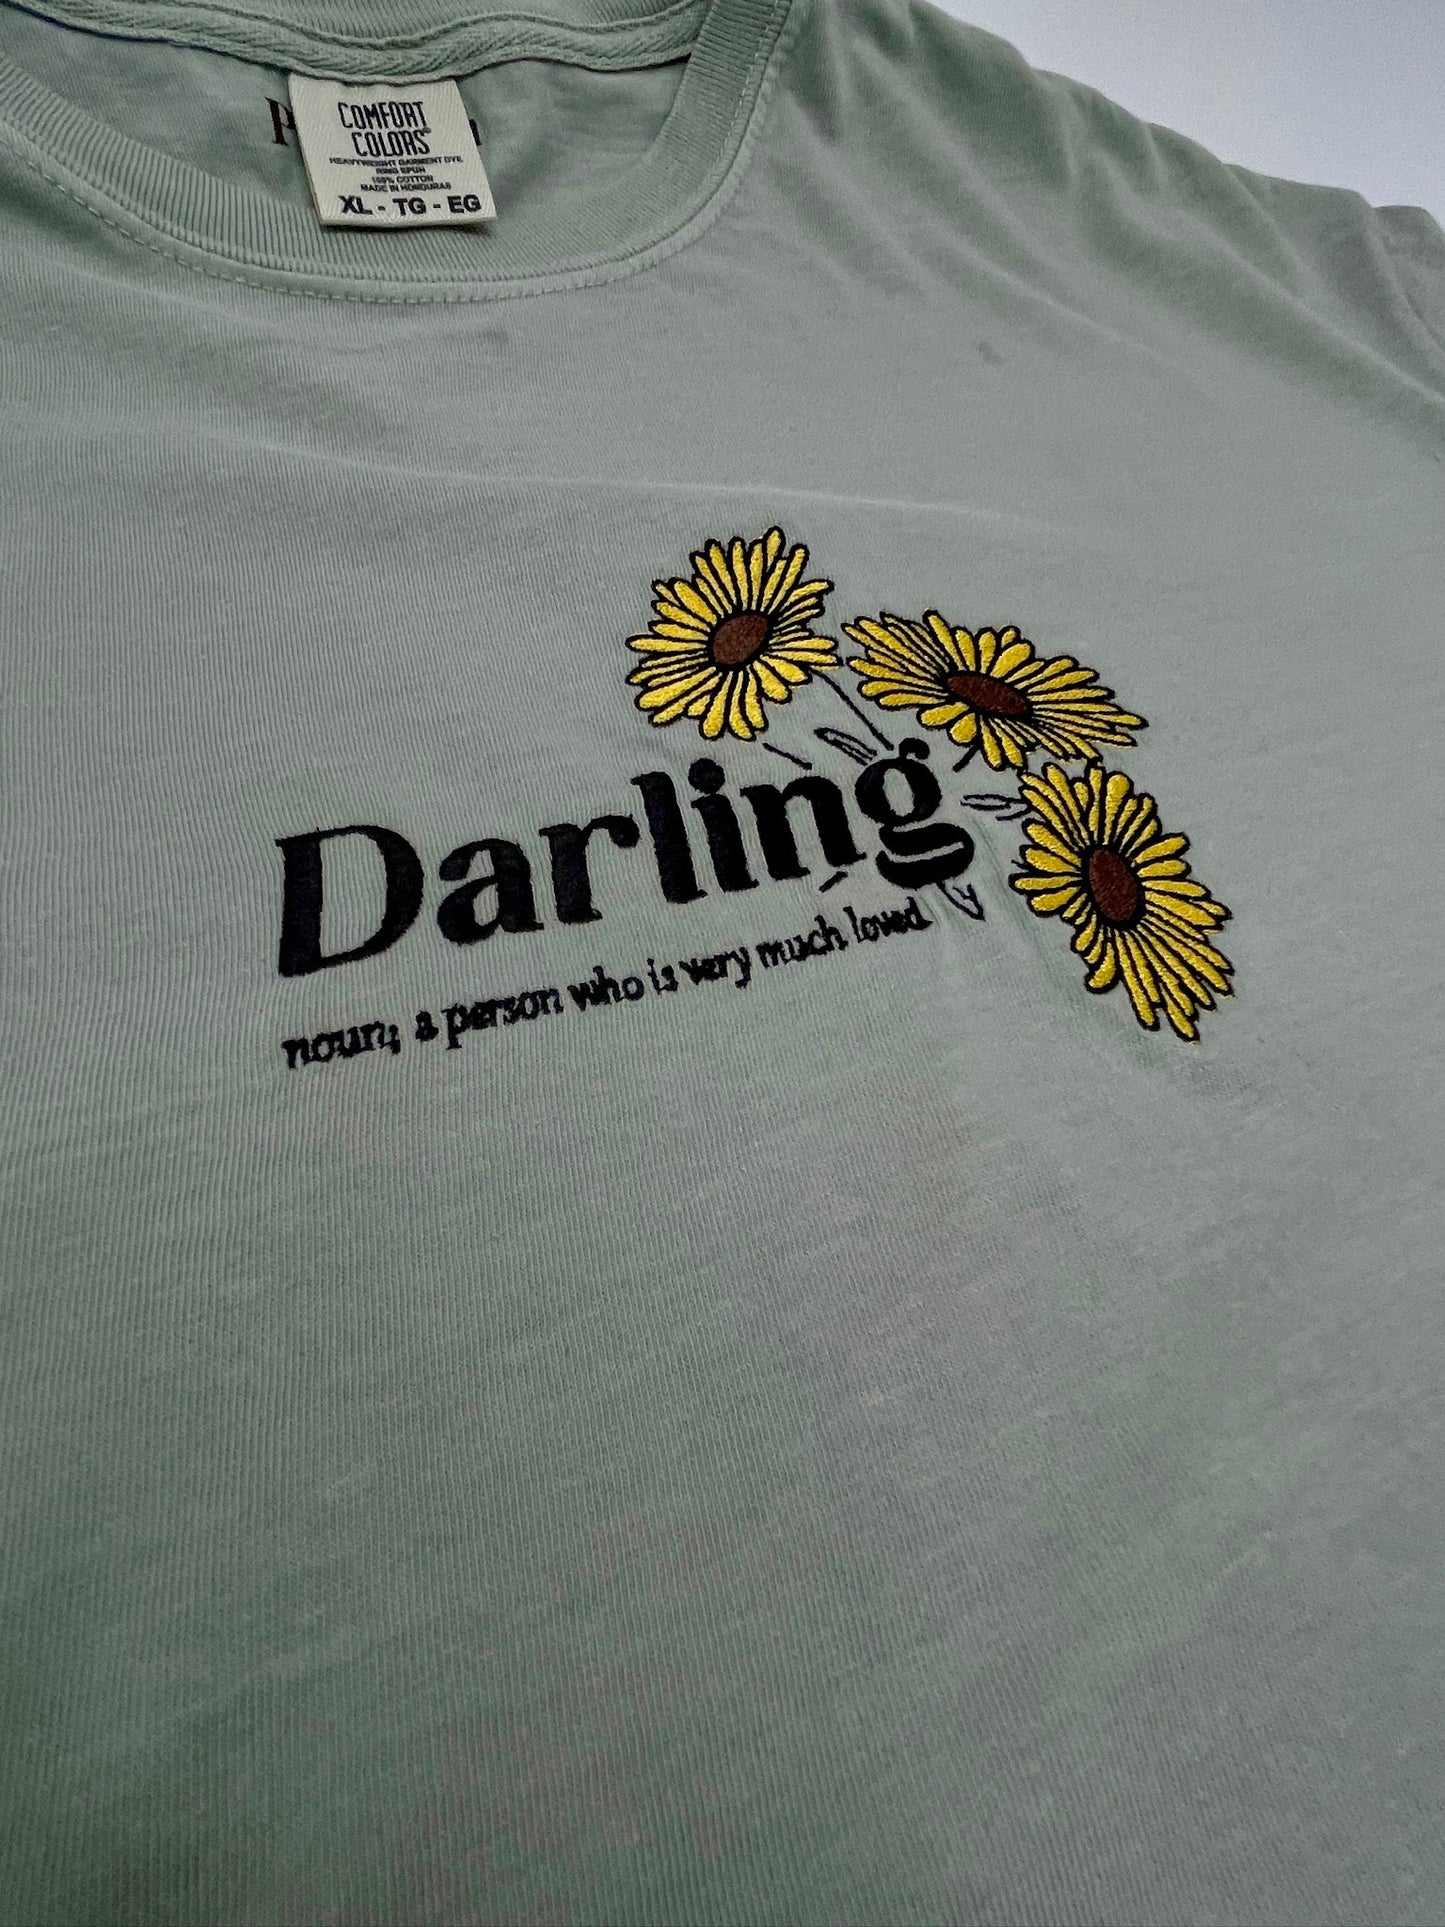 Darling Tee